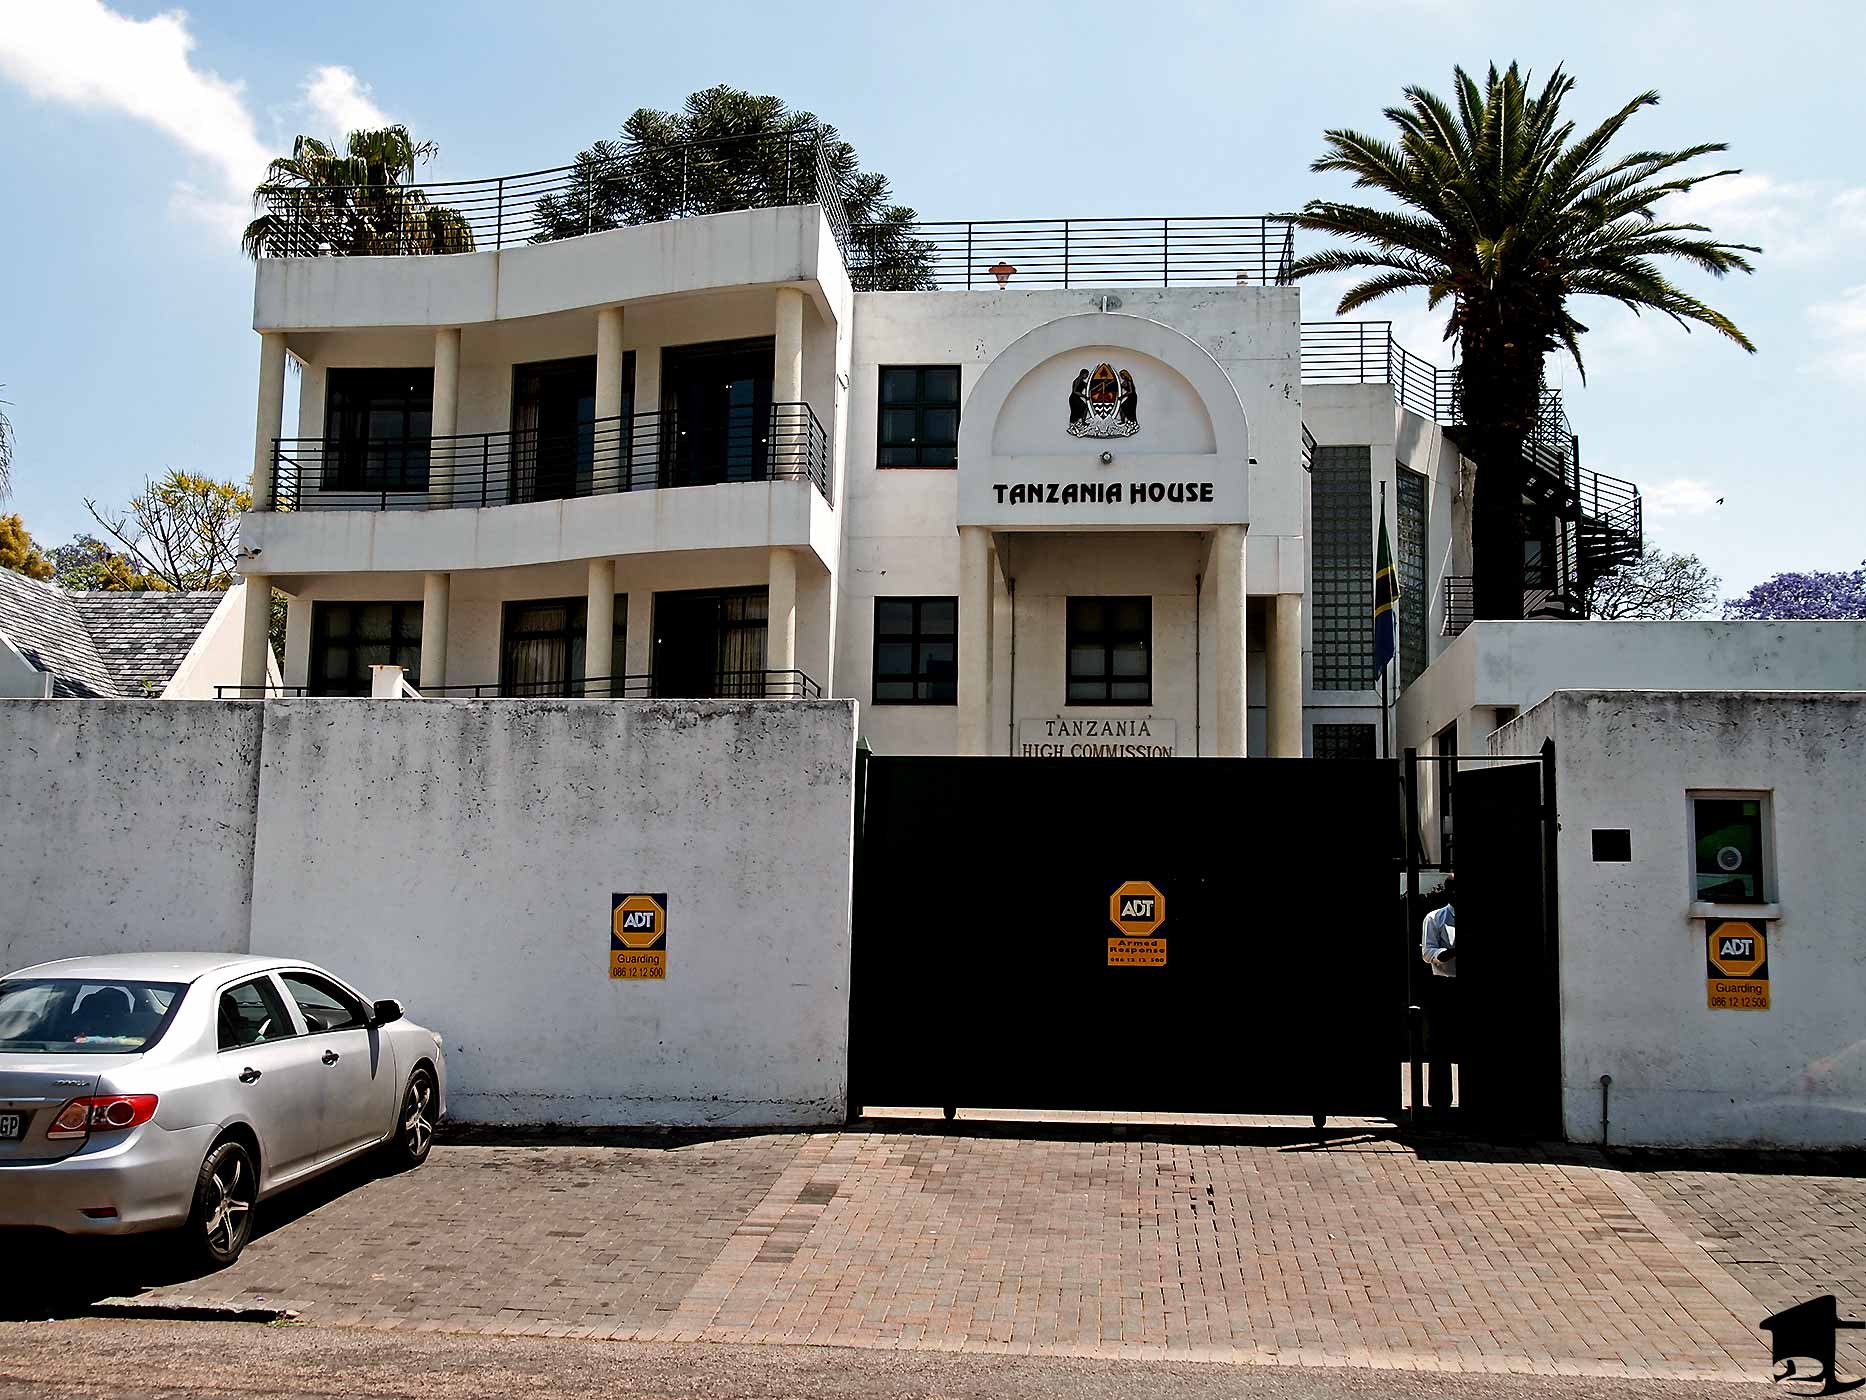 Tanzania High Commission in Pretoria, South Africa